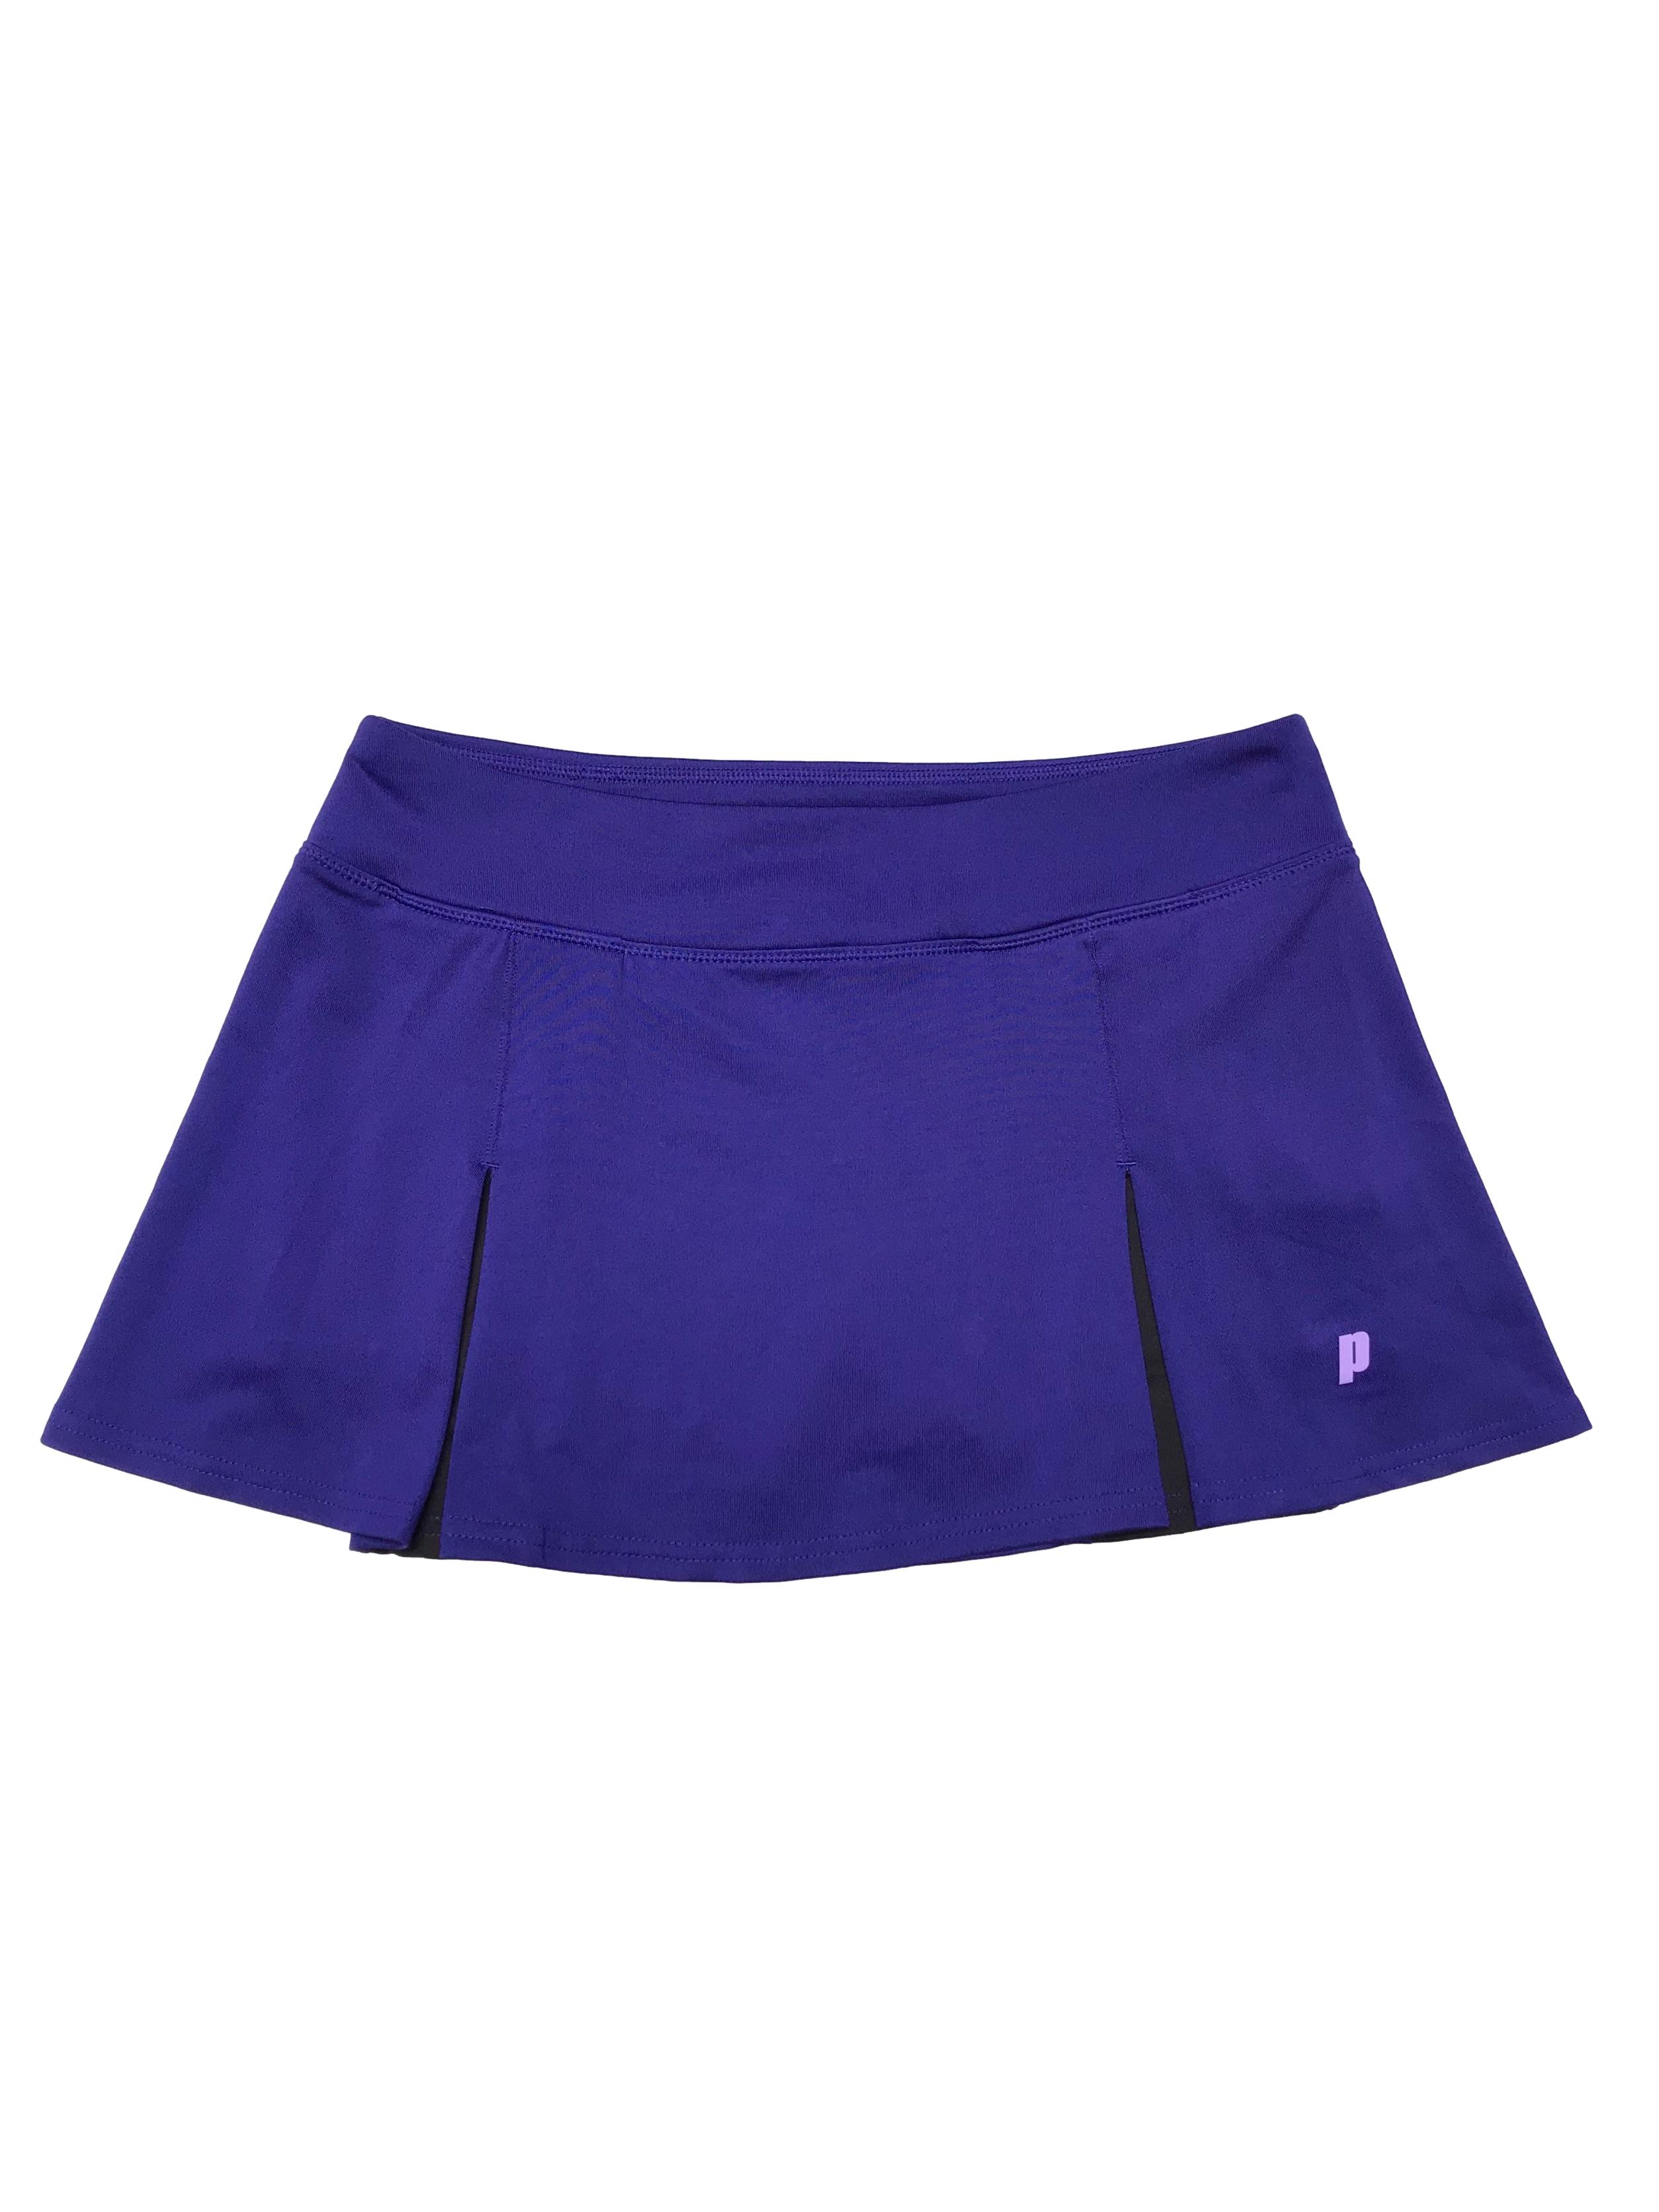 Falda de tennis Prince, con short interno, de lycra. Pretina 76cm sin estirar Largo 30cm